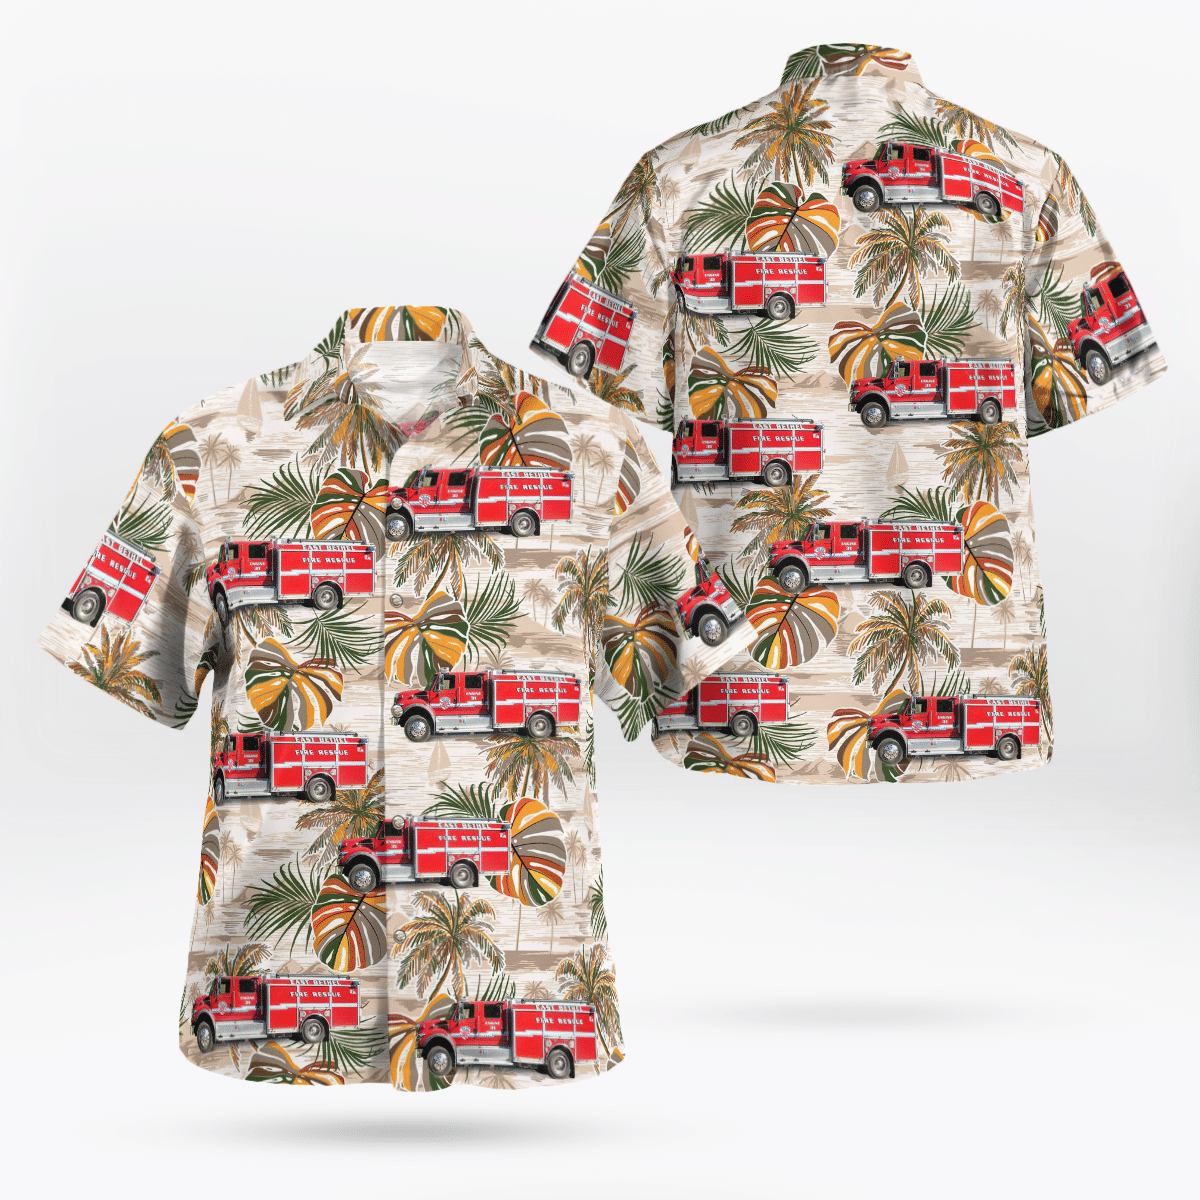 Best Hawaiian shirts 2022 280